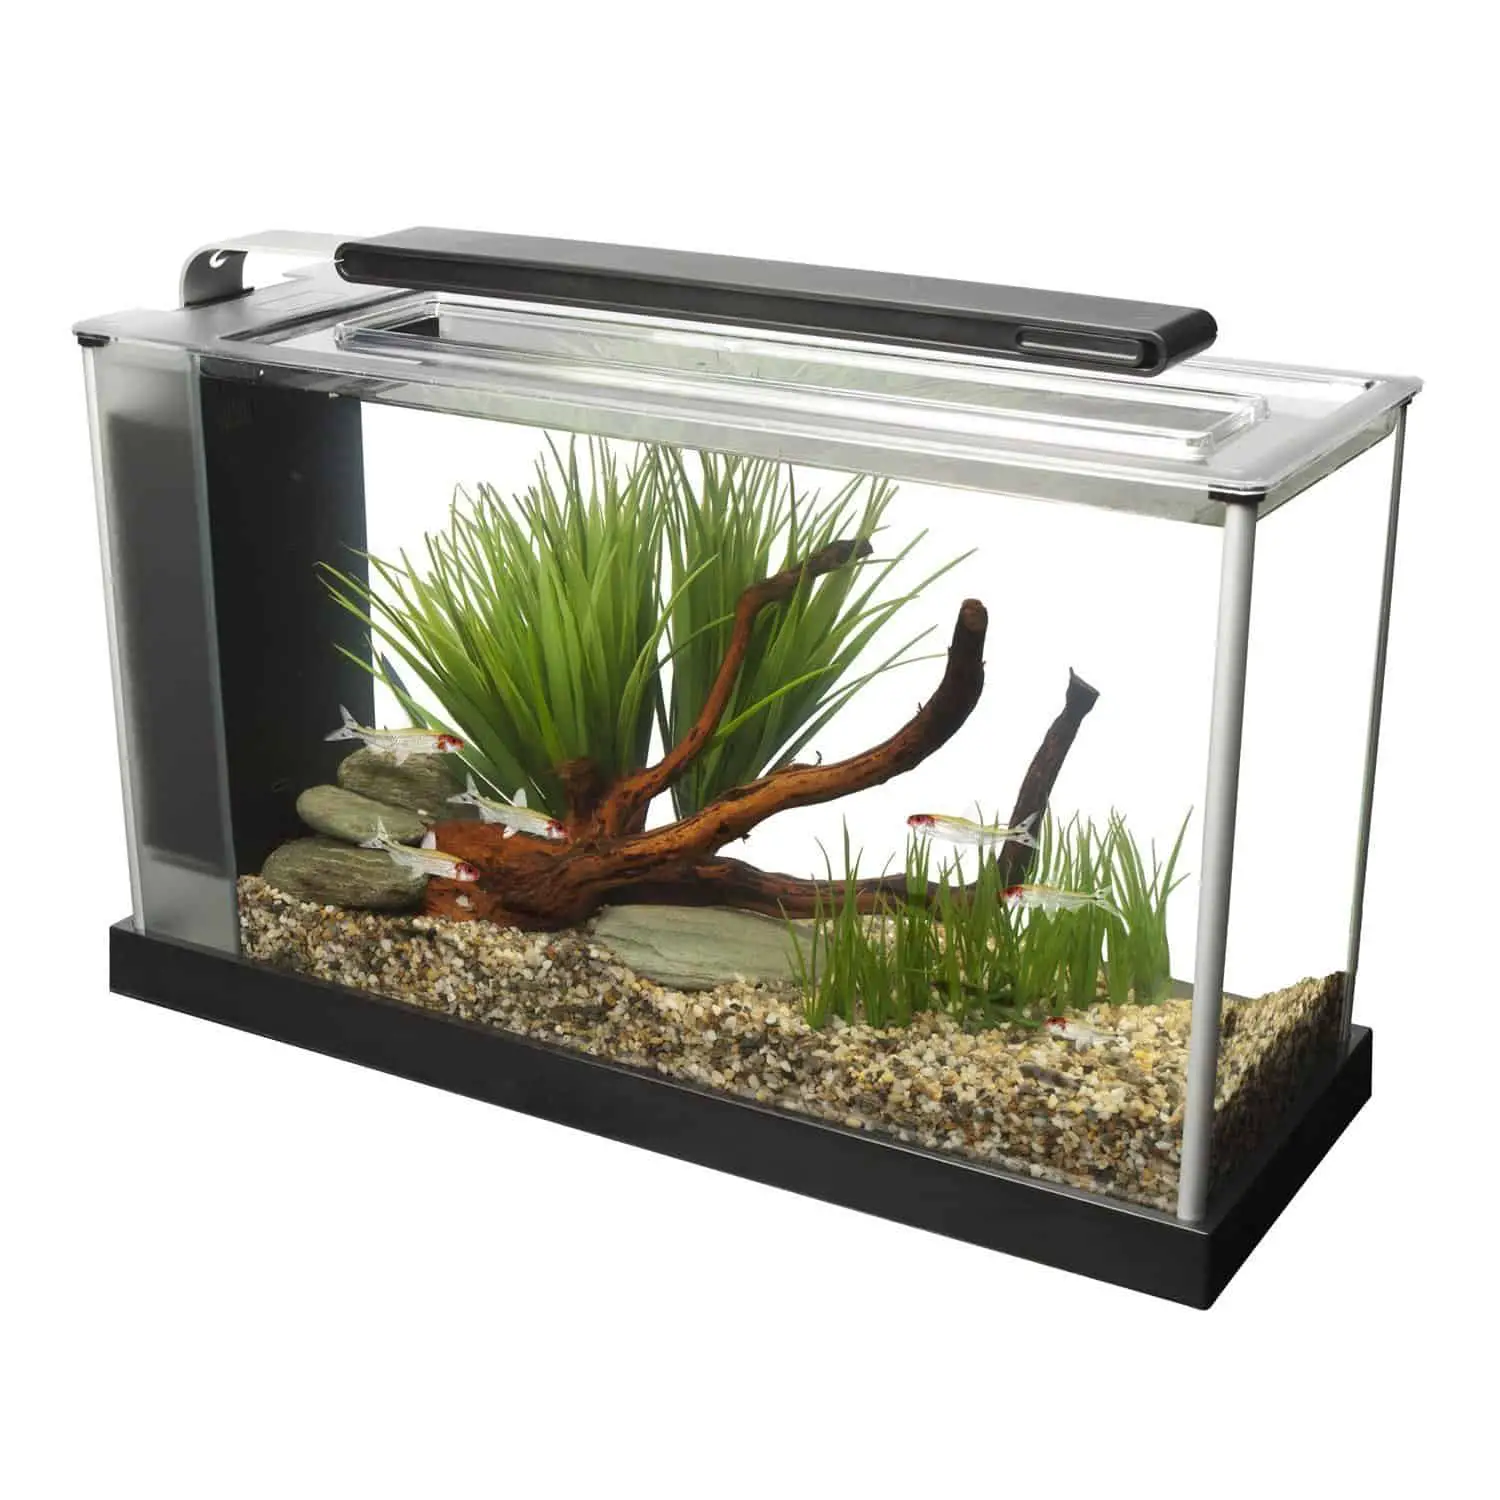 5 Gallon Fish Tank – The Perfect Nano Aquarium Size